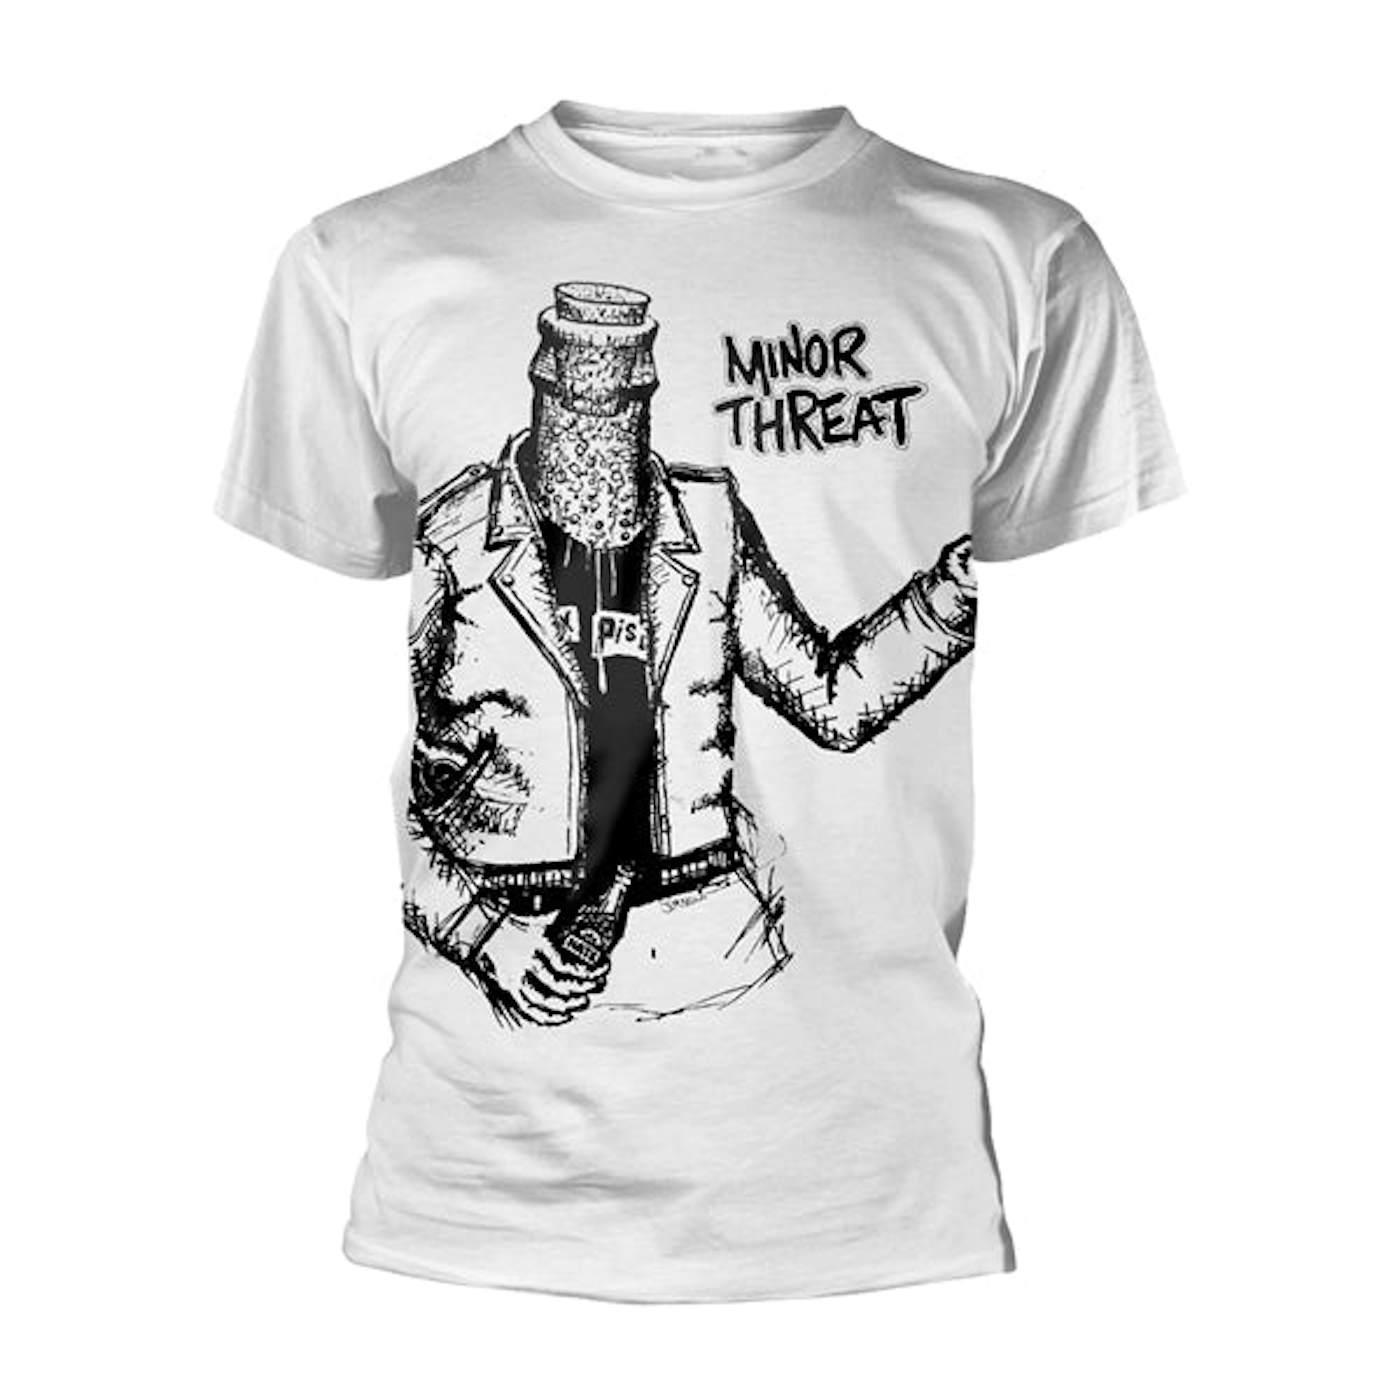 Minor Threat T Shirt - Bottle Man (Jumbo Print)